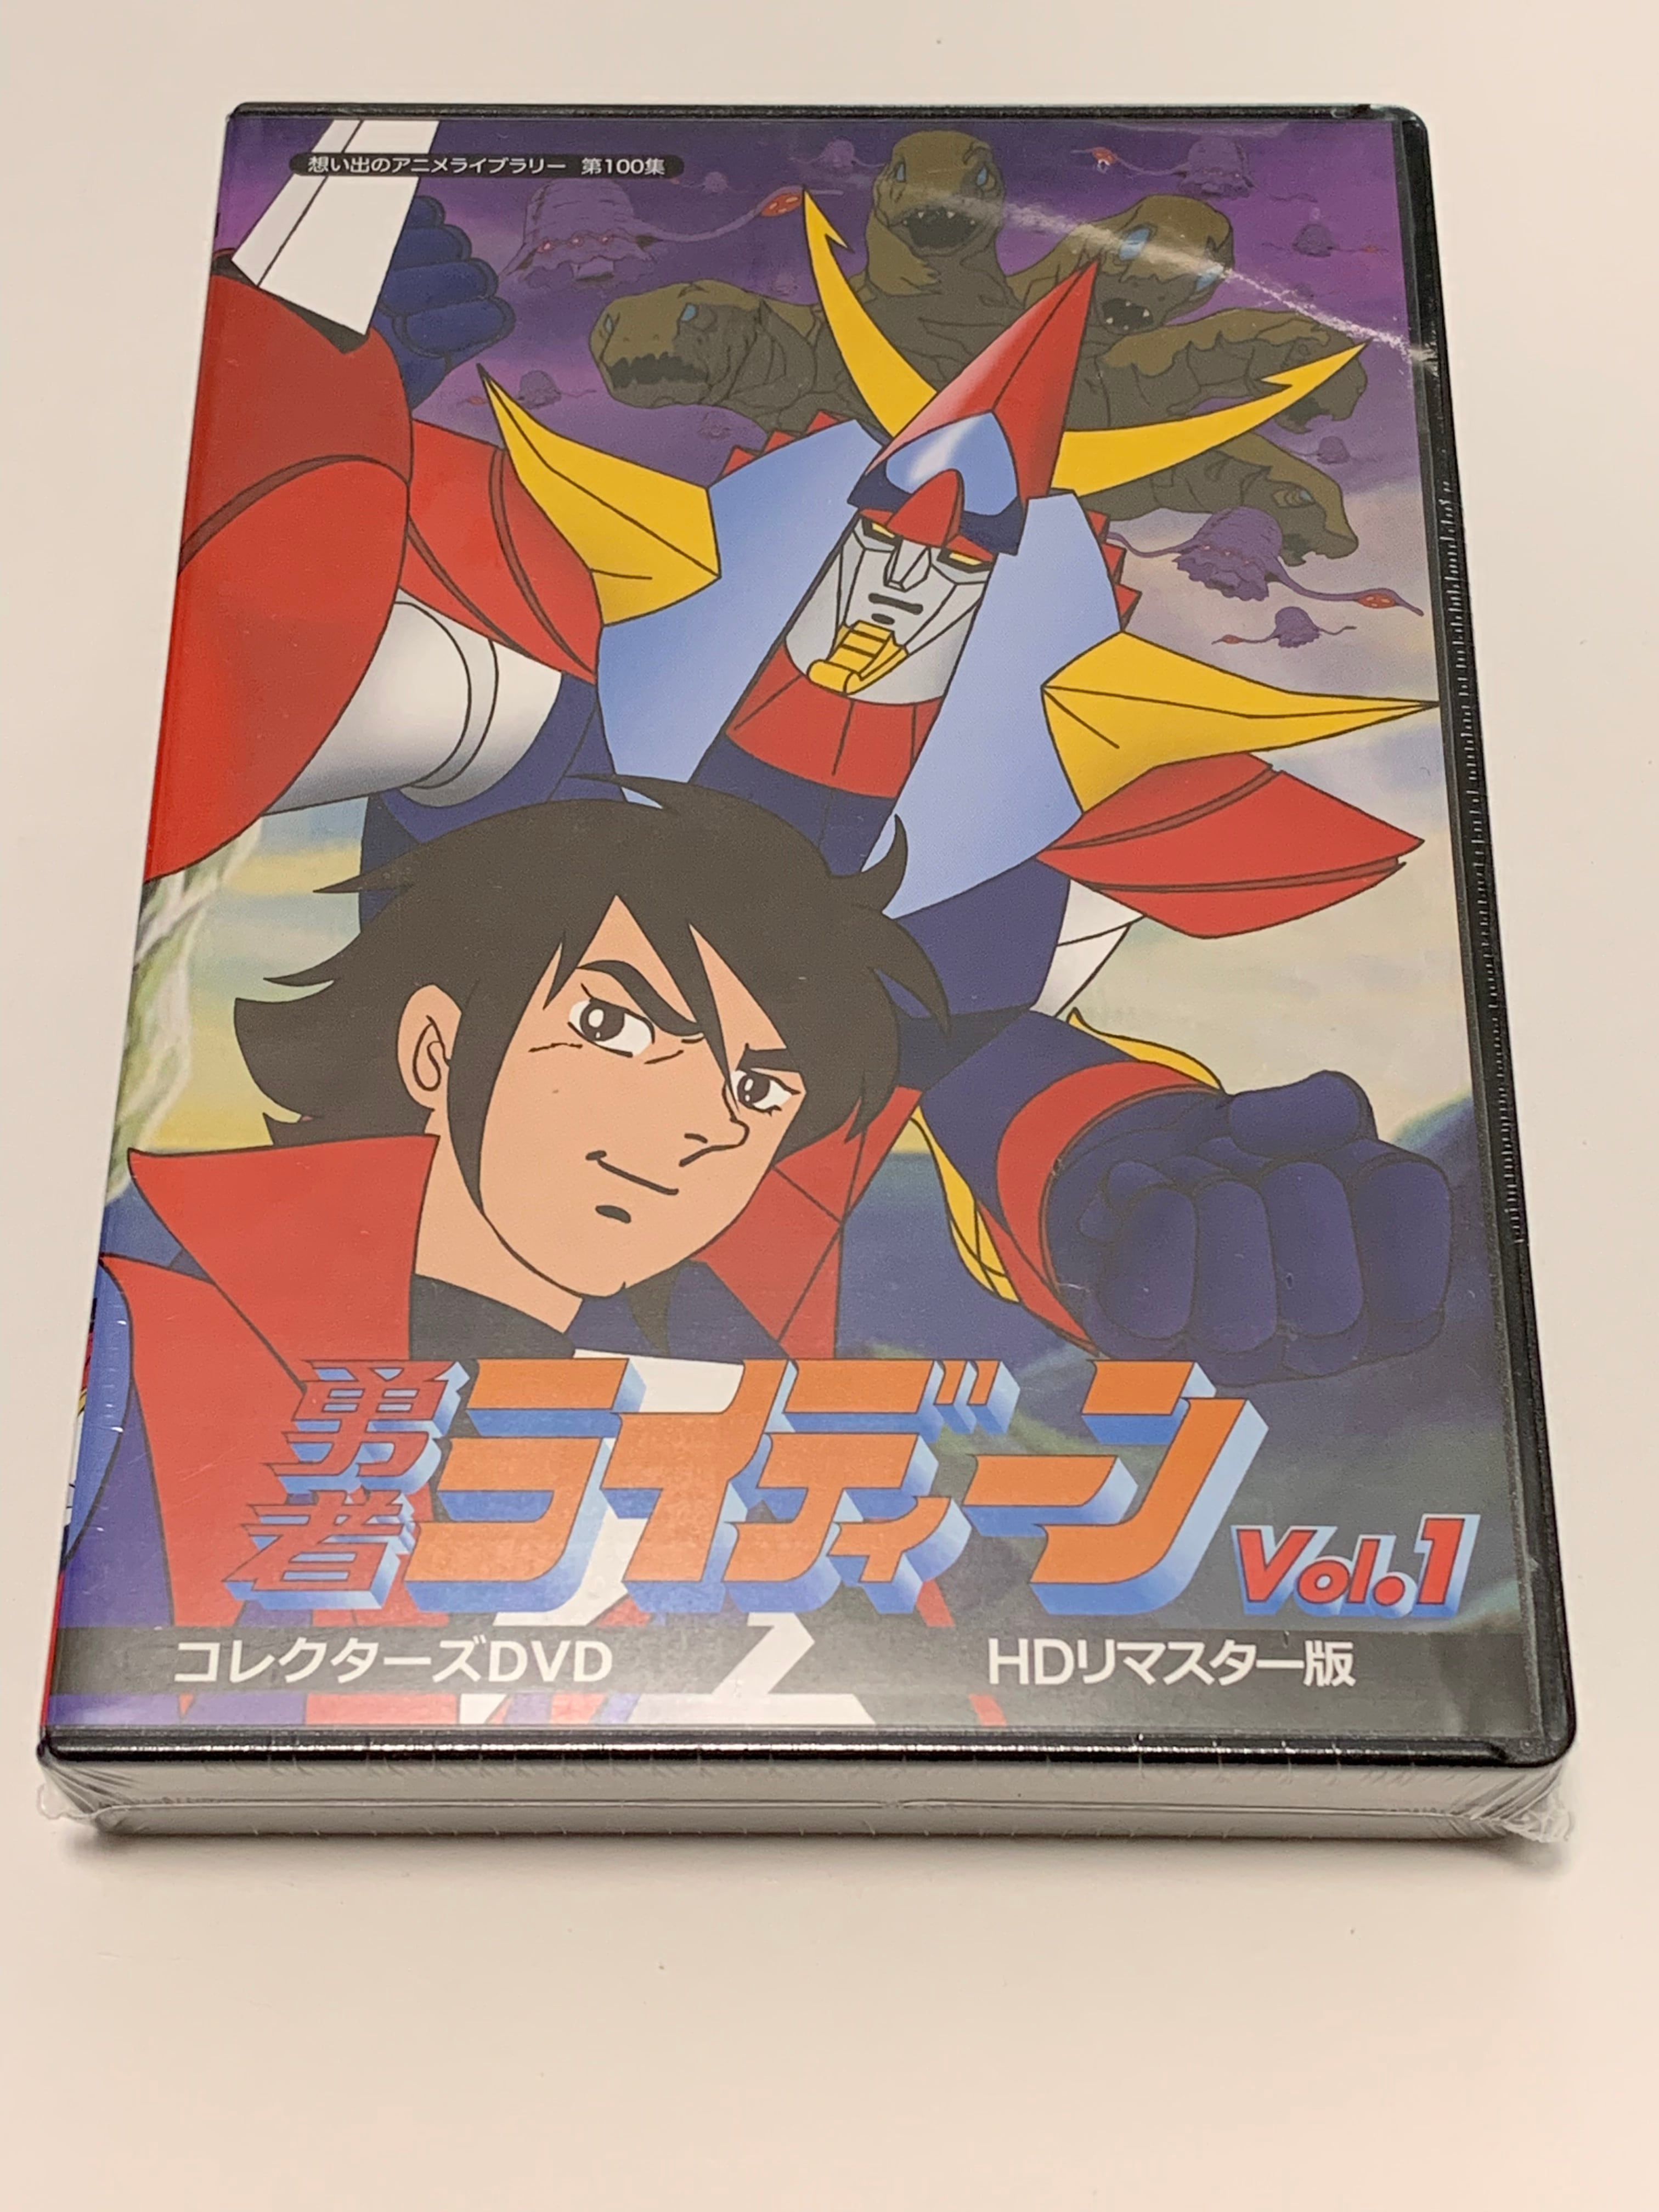 勇者ライディーン コレクターズDVD Vol.1、2のセット | susunshop